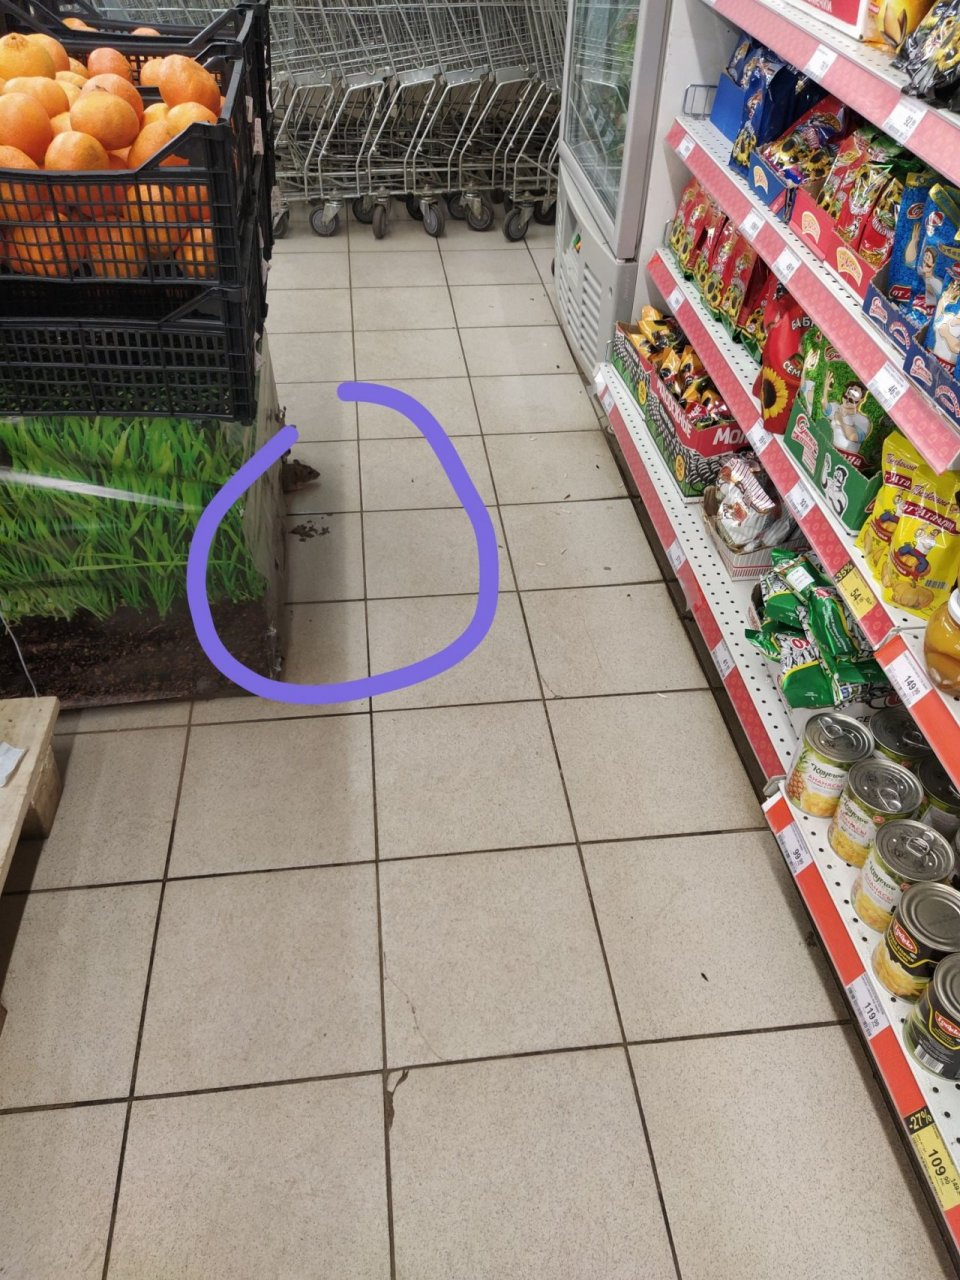 "Выпрыгнула на меня из семечек": покупатели в шоке от засилия крыс в магазинах Ярославля